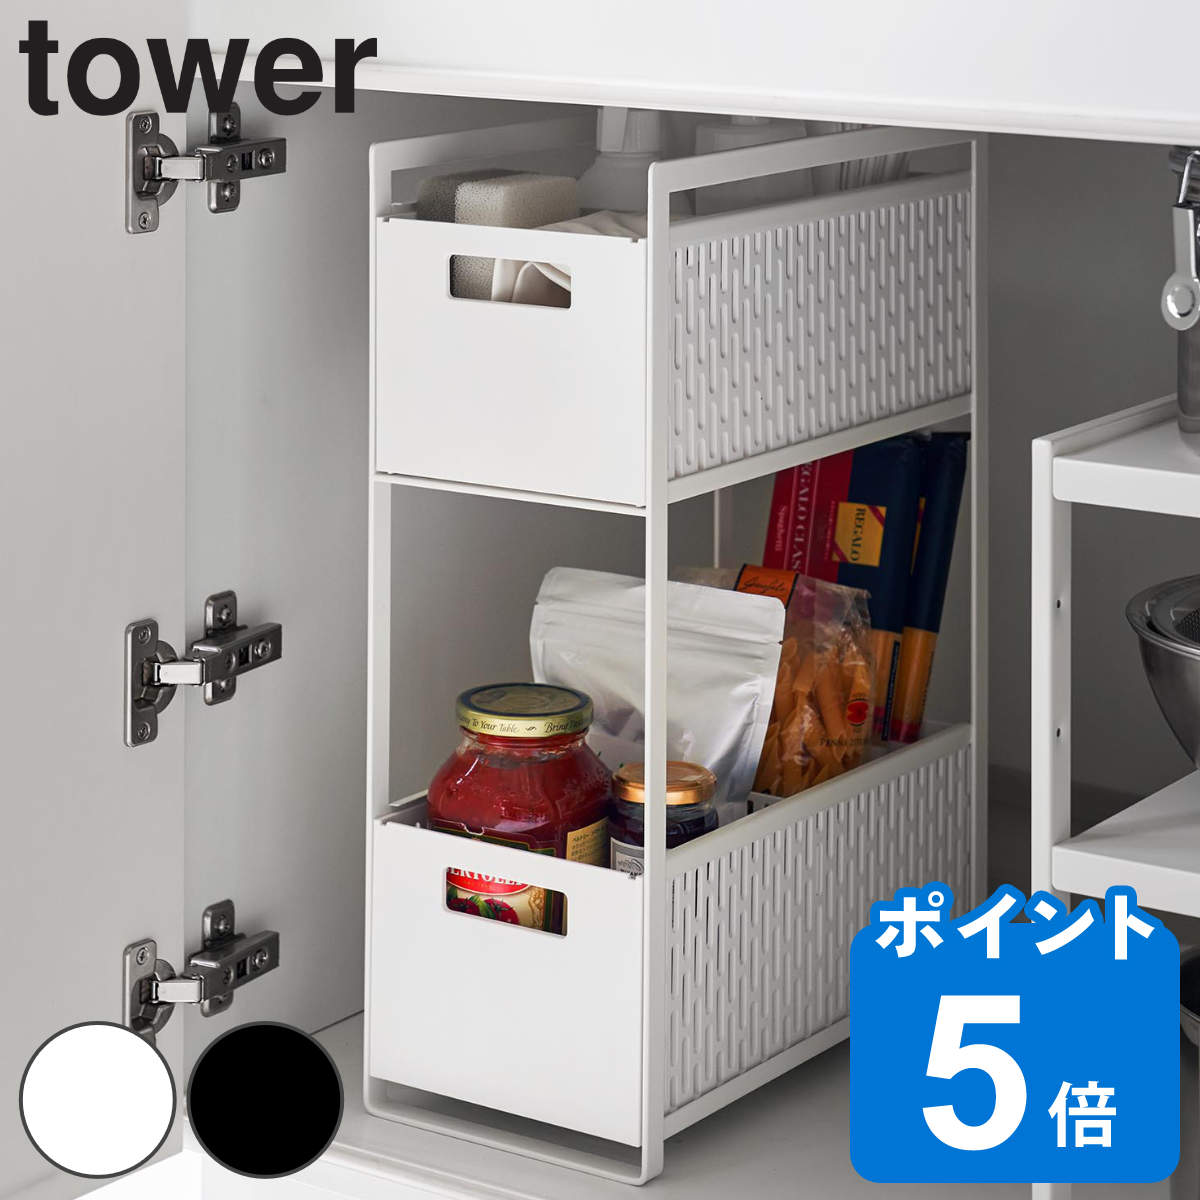 山崎実業 tower シンク下収納バスケット タワー 2段